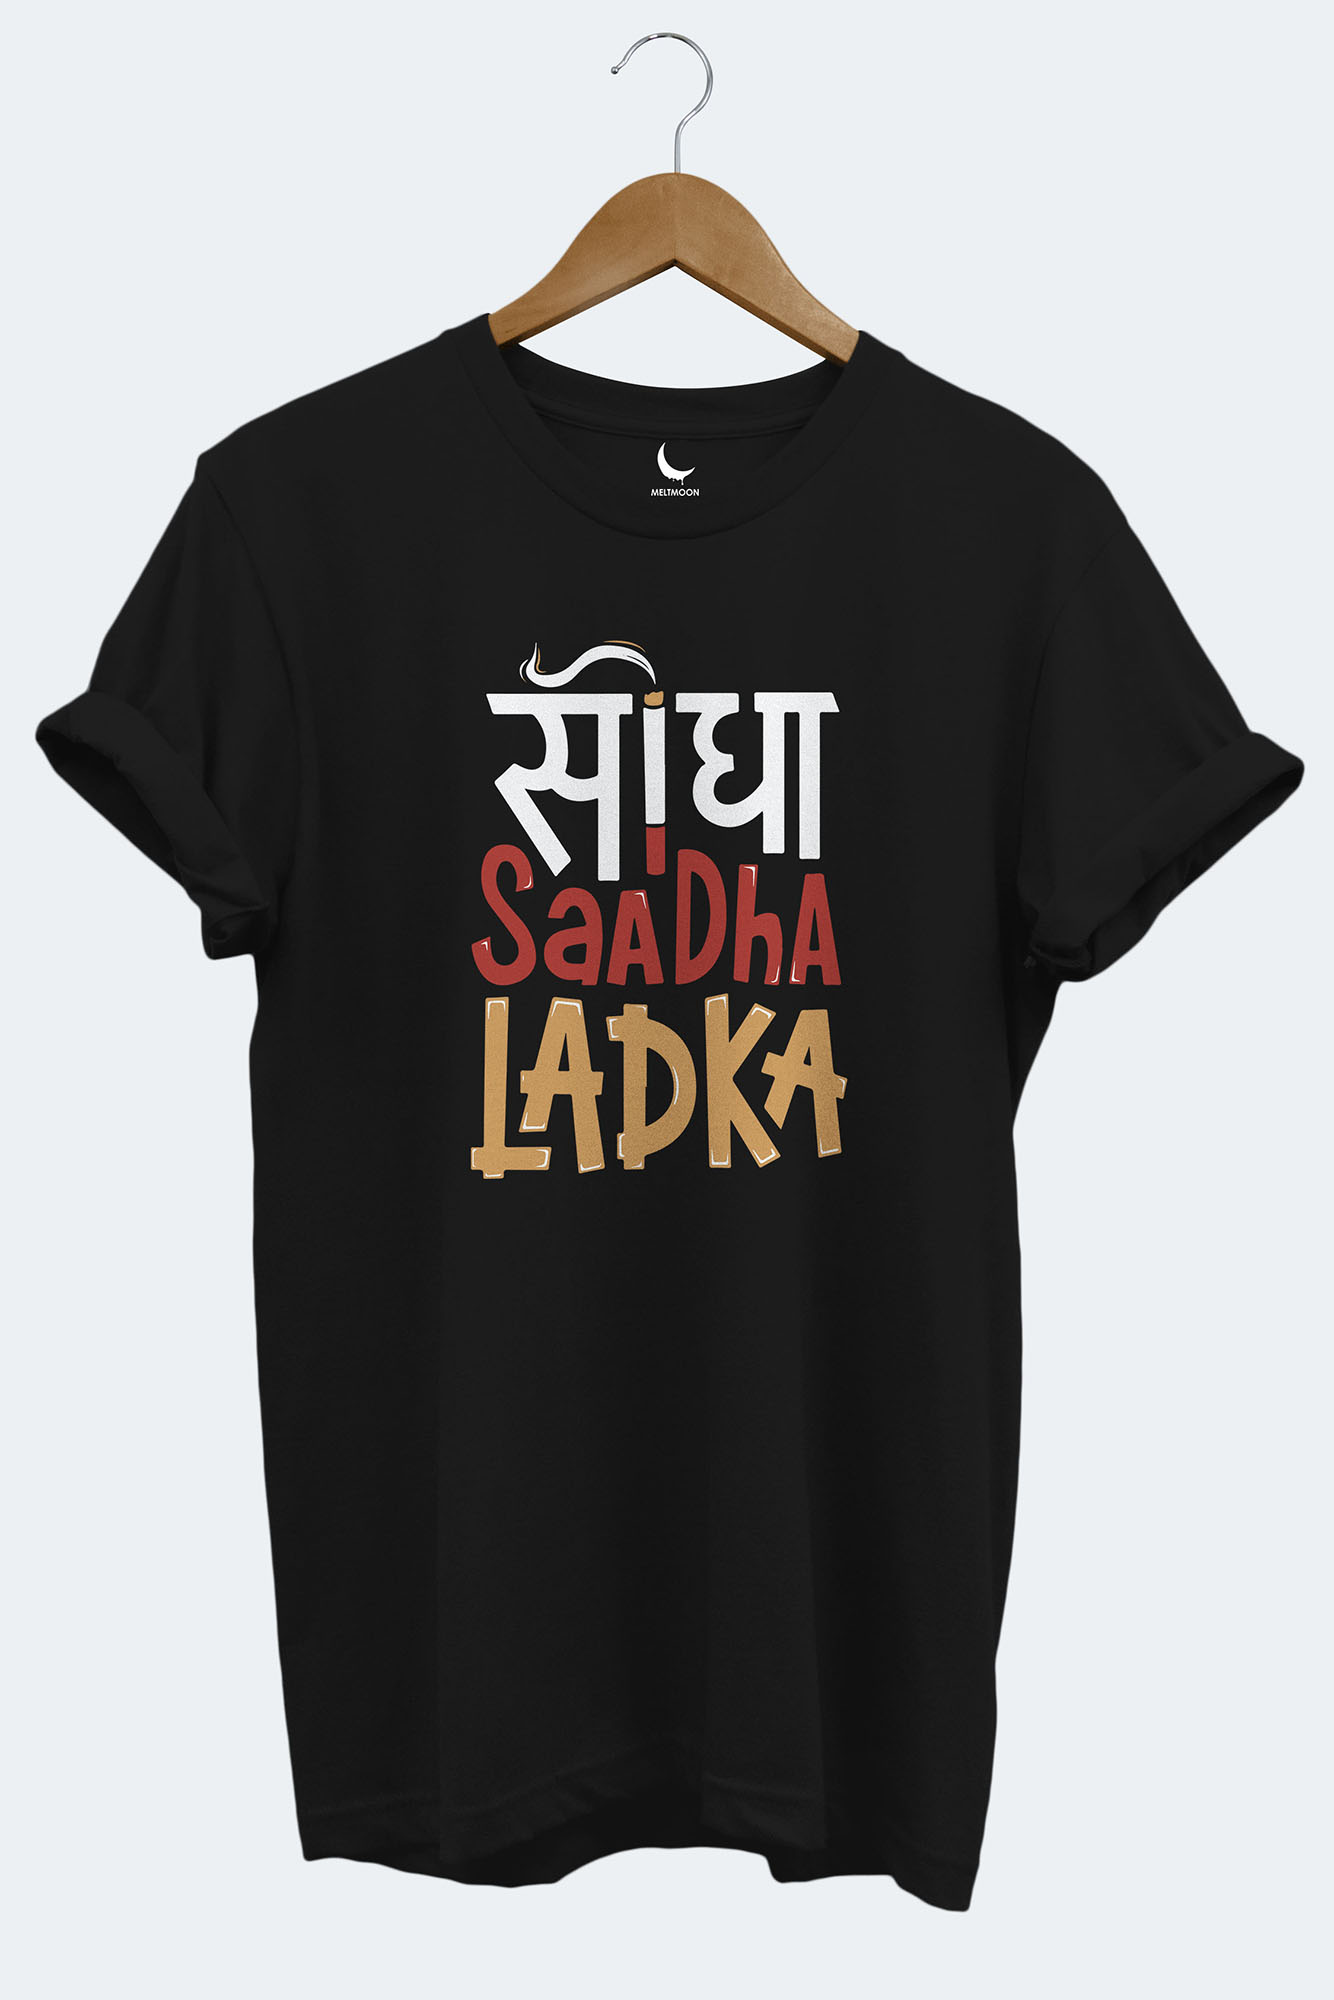 Sidha Saadha Ladka Graphic Tee